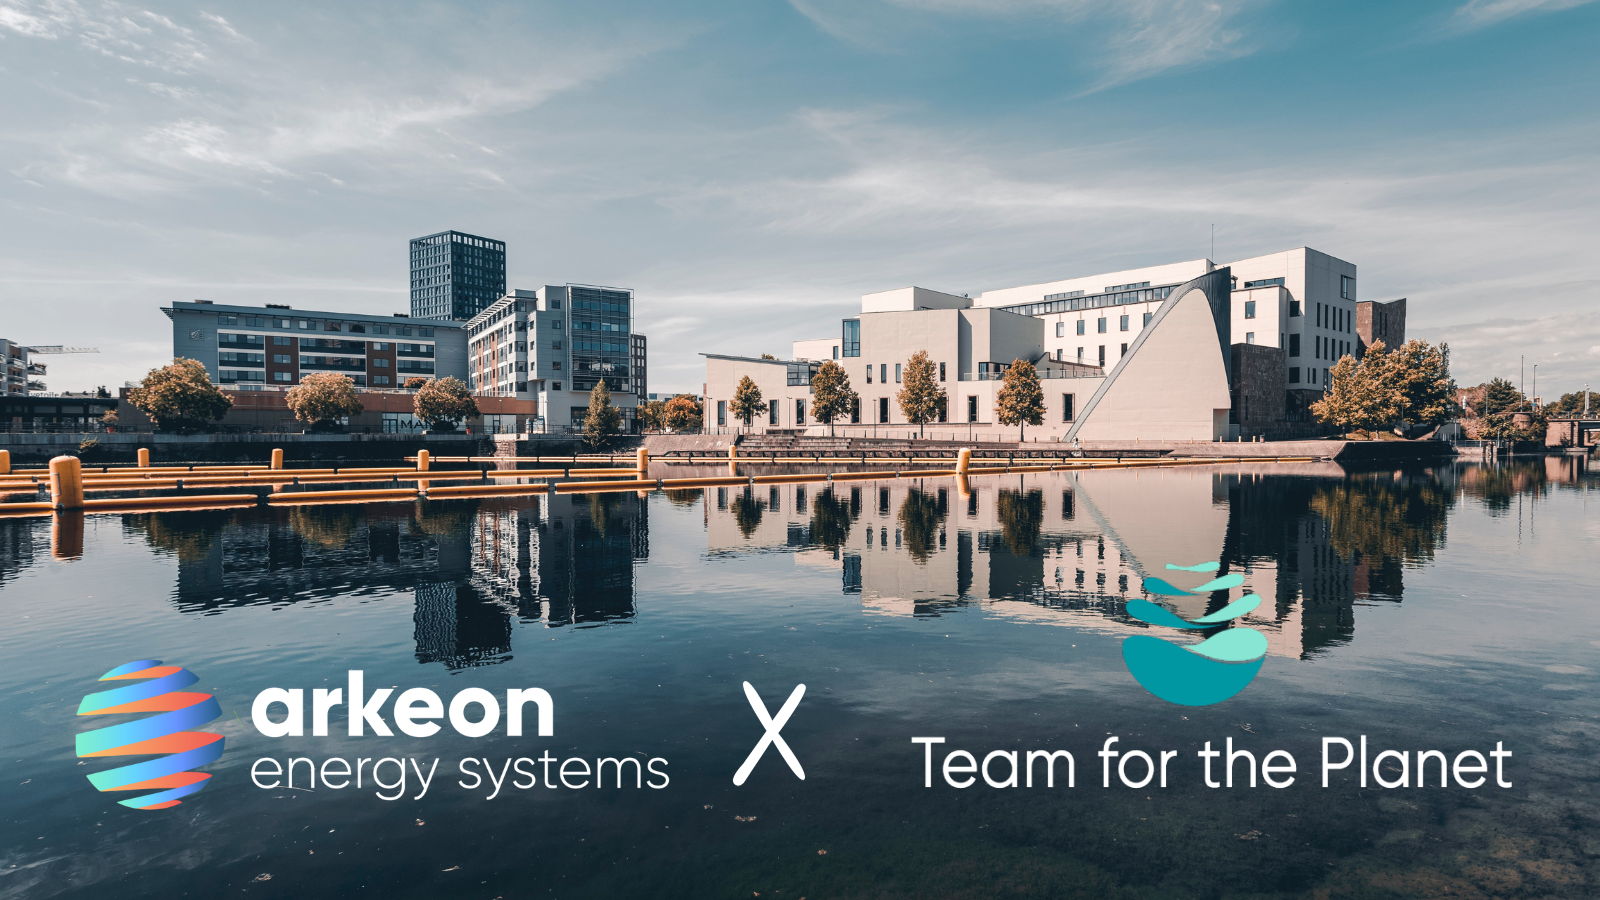 Remplacer les chaudières au gaz et au fioul dans les bâtiments en France : la promesse d'Arkeon Energy Systems, soutenue par Team for the Planet